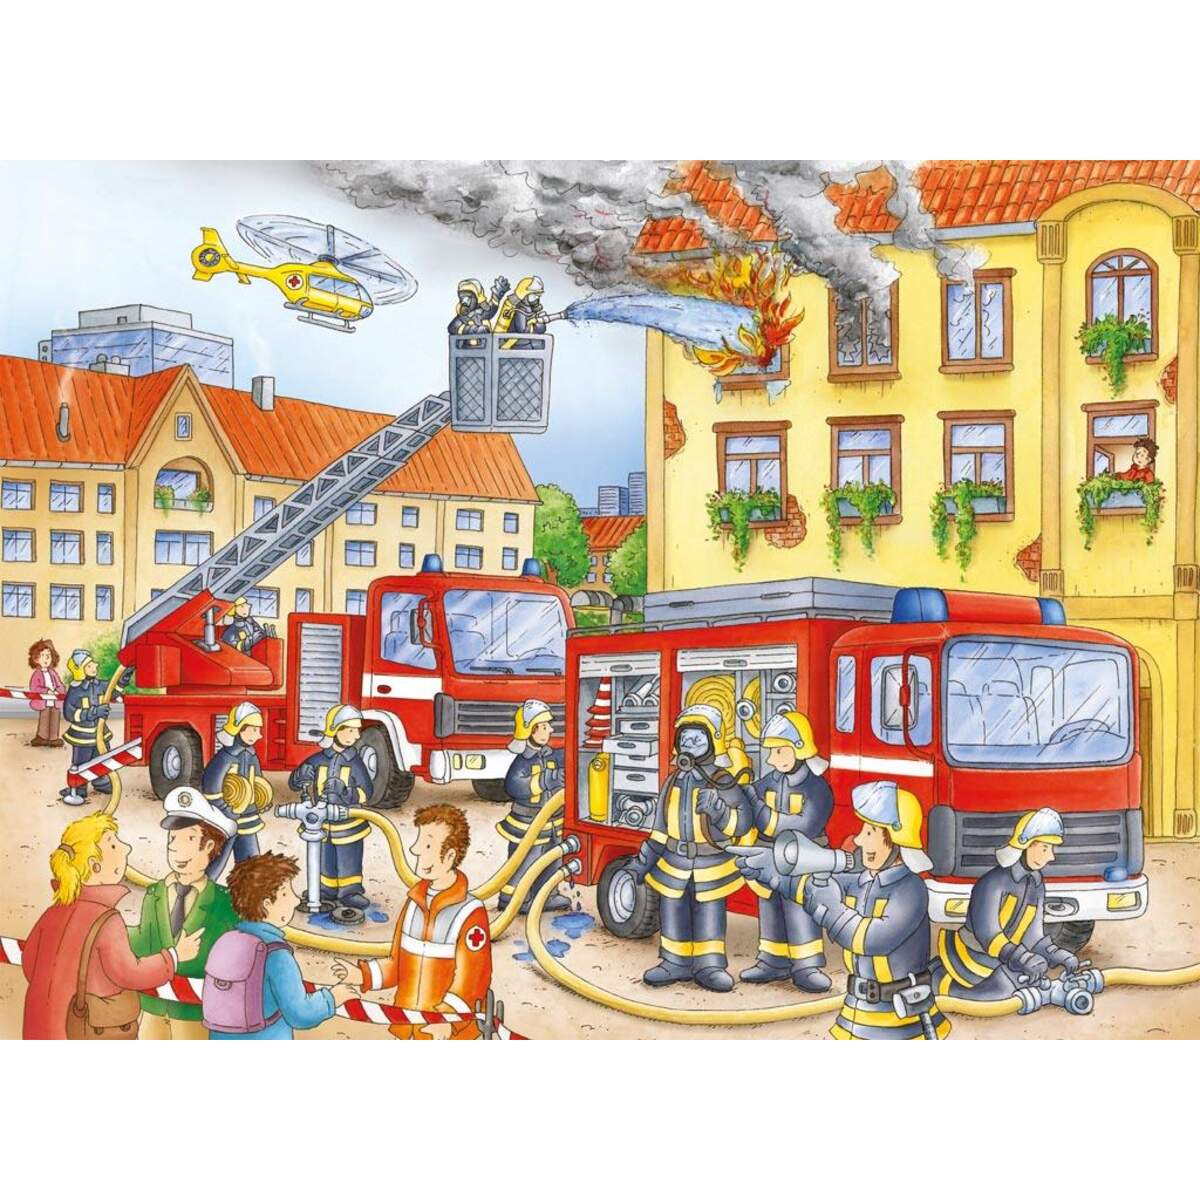 Ravensburger XXL Puzzle Unsere Feuerwehr, 100 Teile